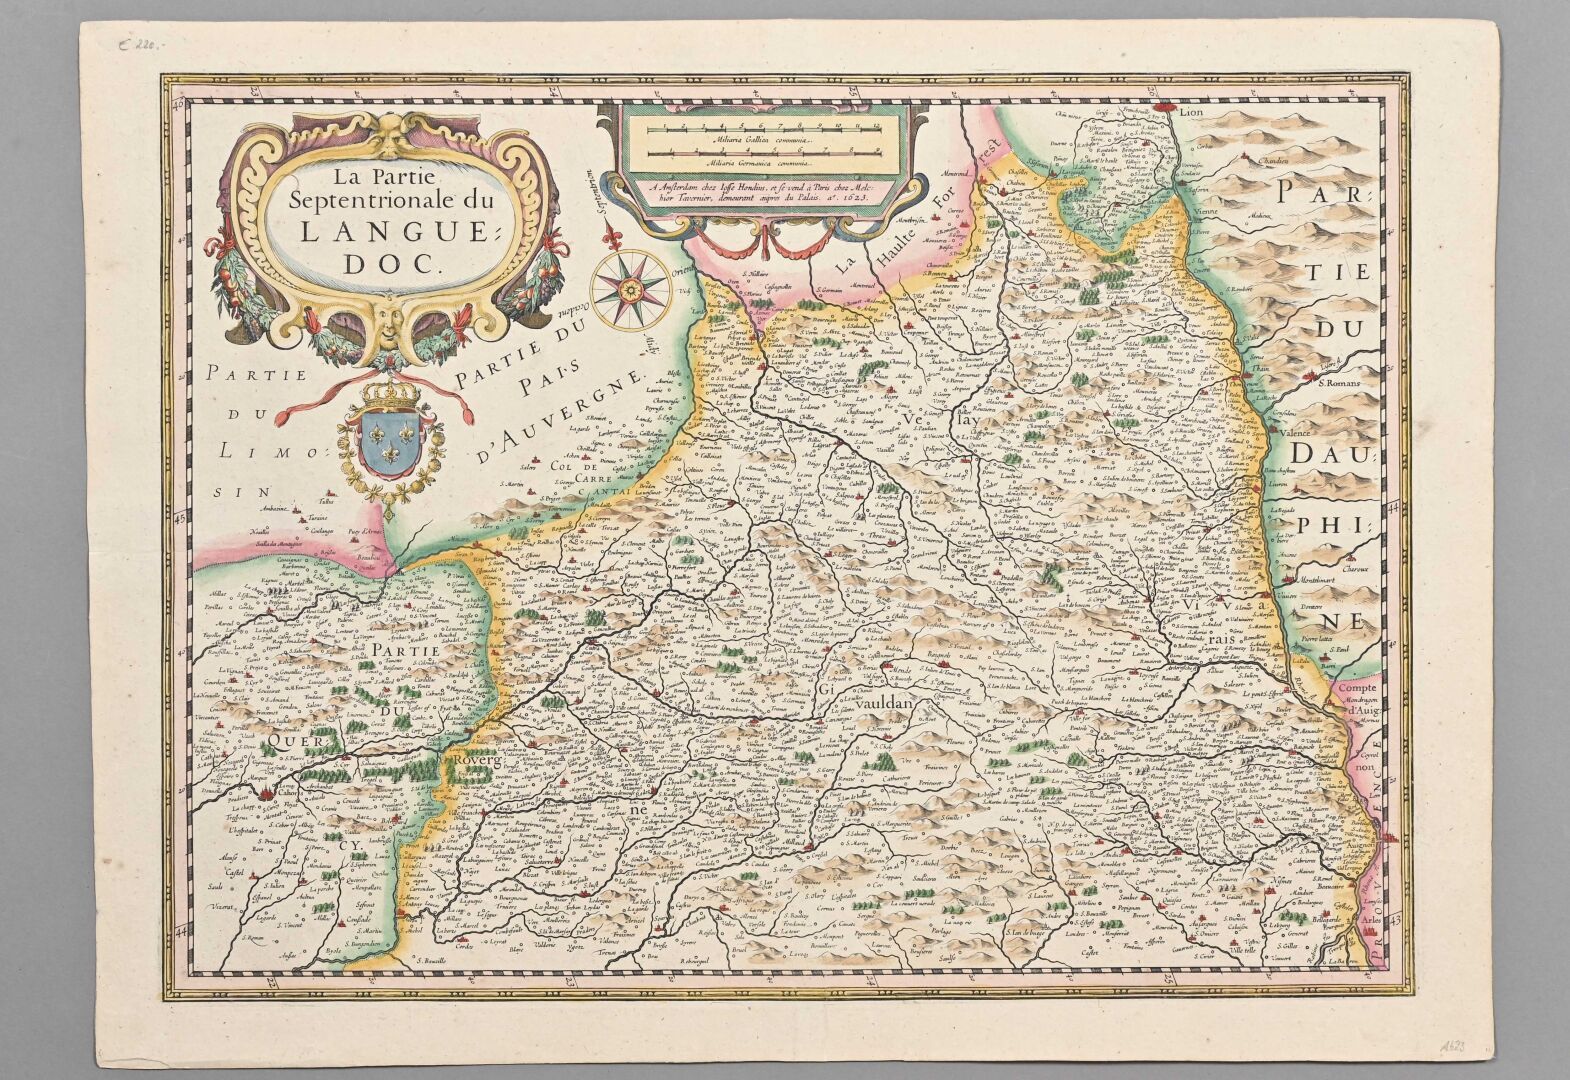 Null 约翰内斯-布劳 (1650-1712)

朗格多克北部地区的地图。

现代着色。

42 x 54 cm AC